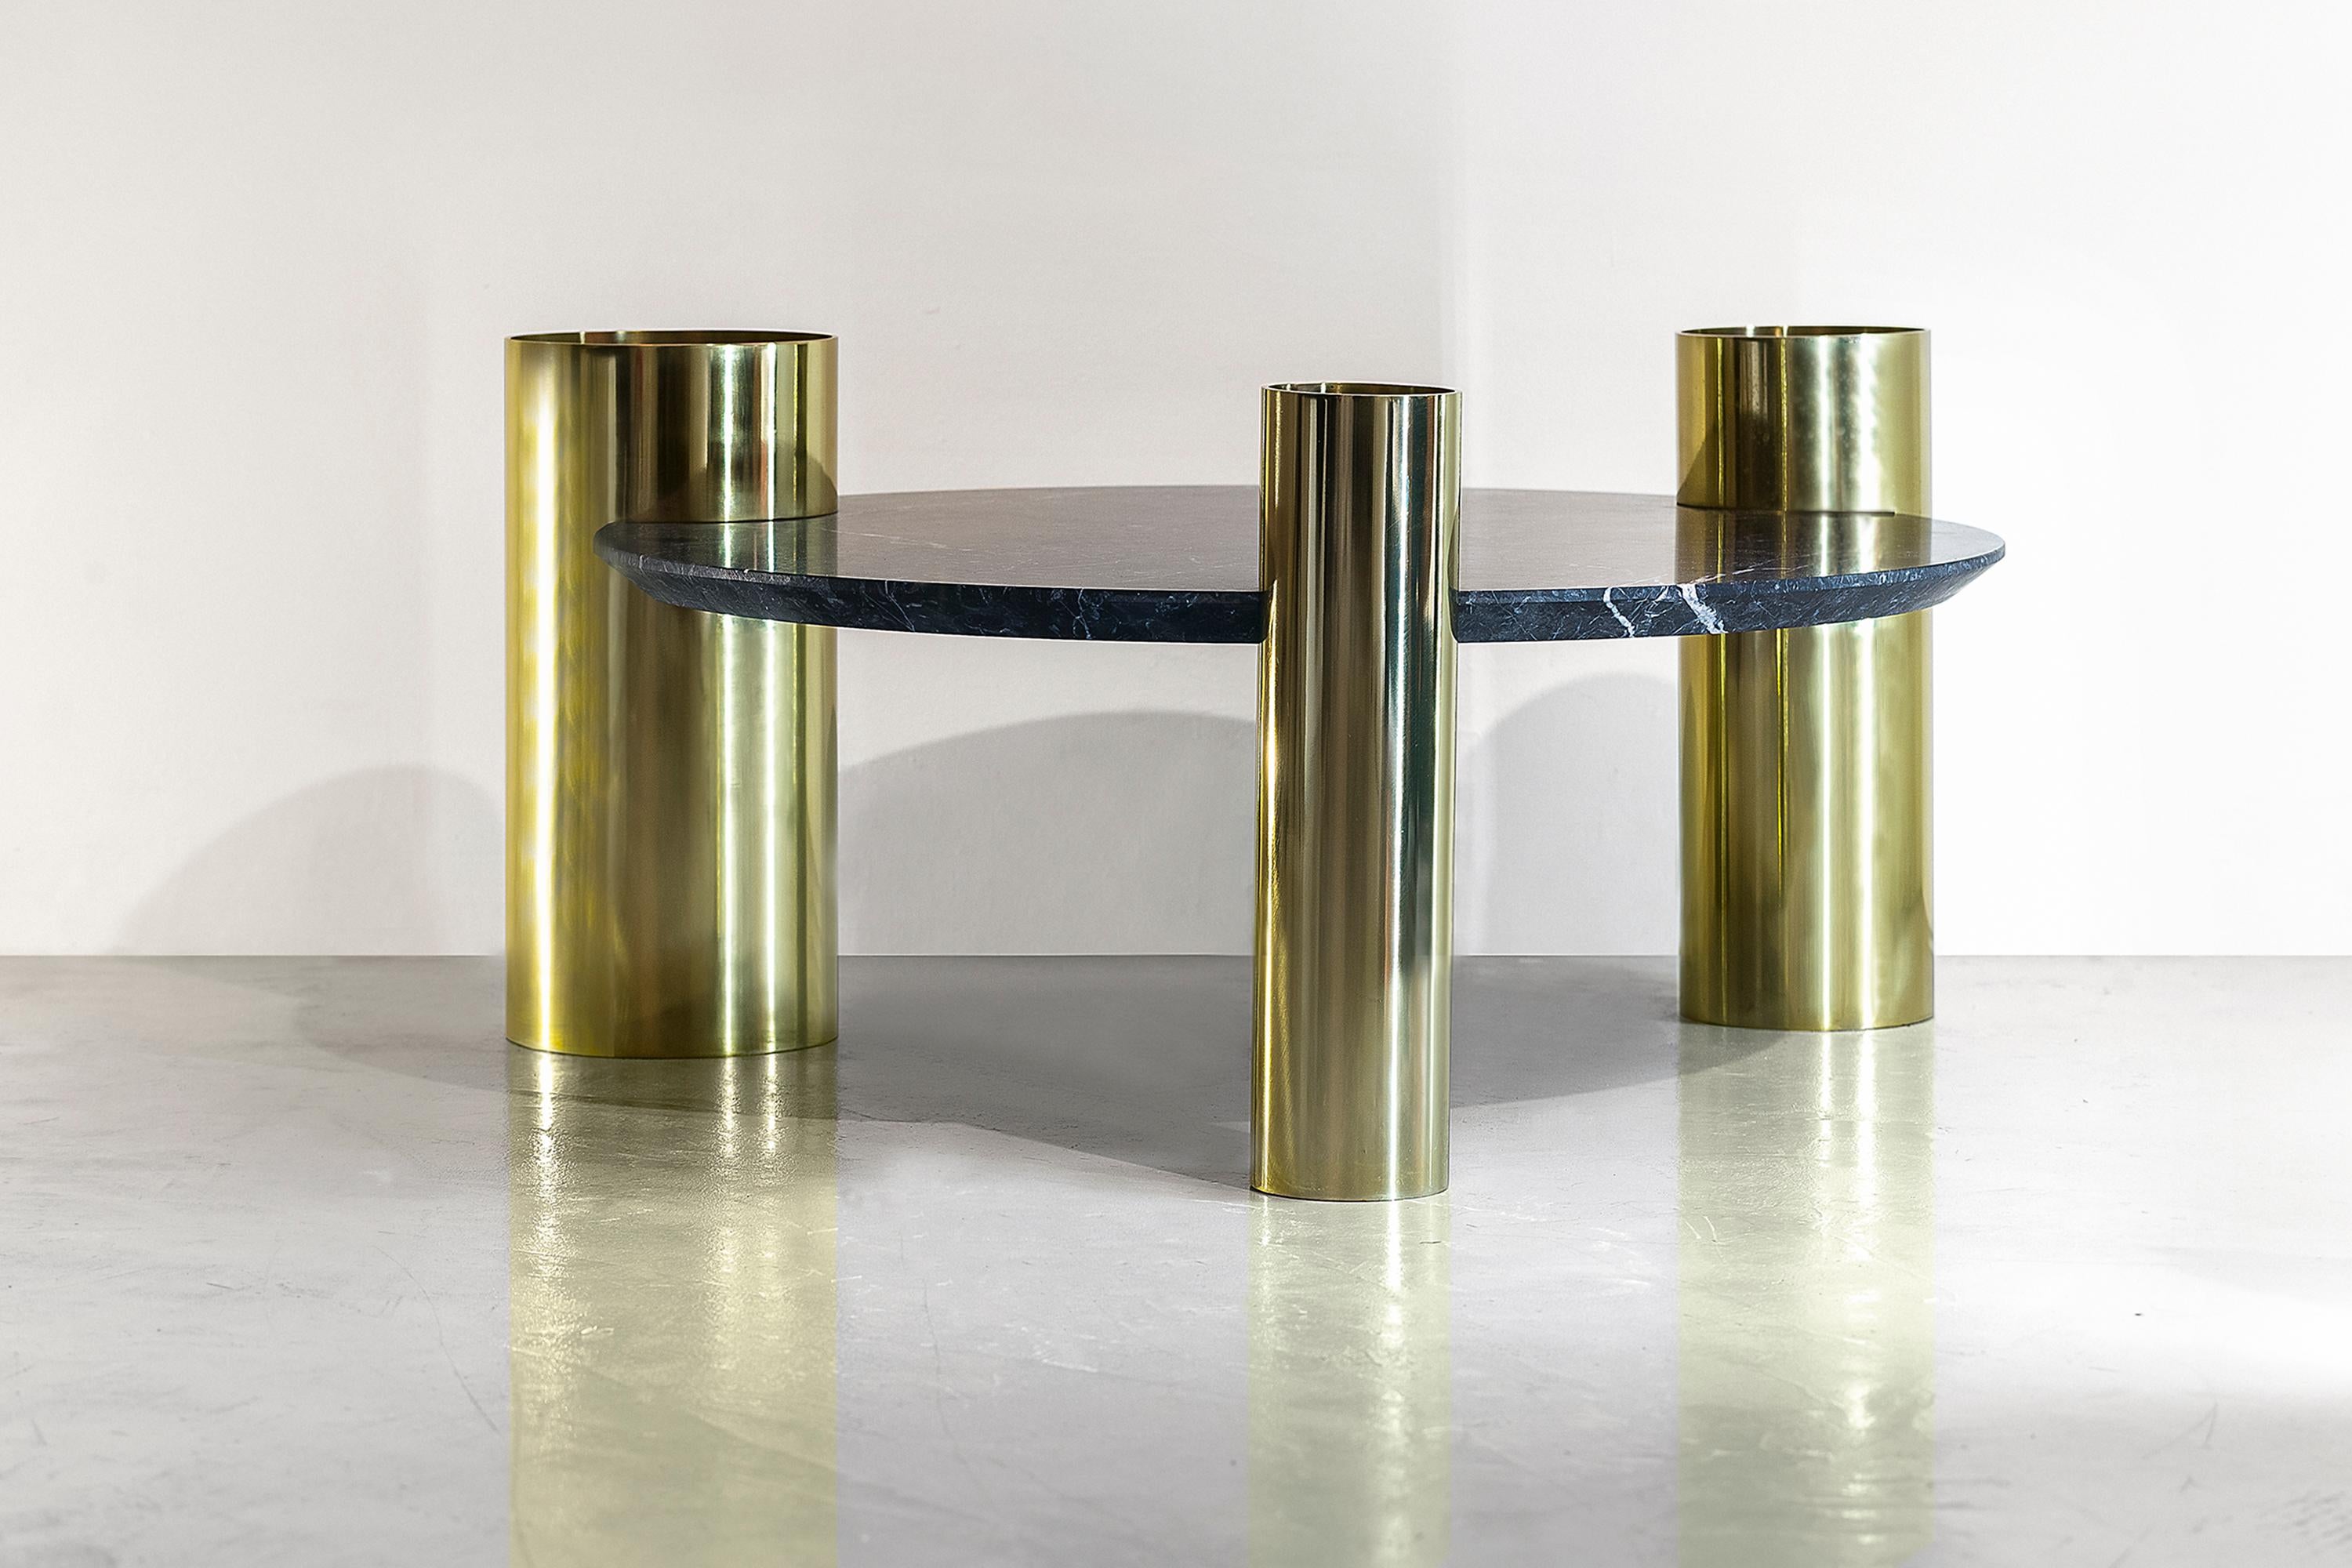 La table basse ronde en marbre Triade est un meuble polyvalent et adapté à différents contextes et solutions d'utilisation. Table basse ronde au style minimal et contemporain, avec des lignes enveloppantes qui concentrent l'attention sur le plateau